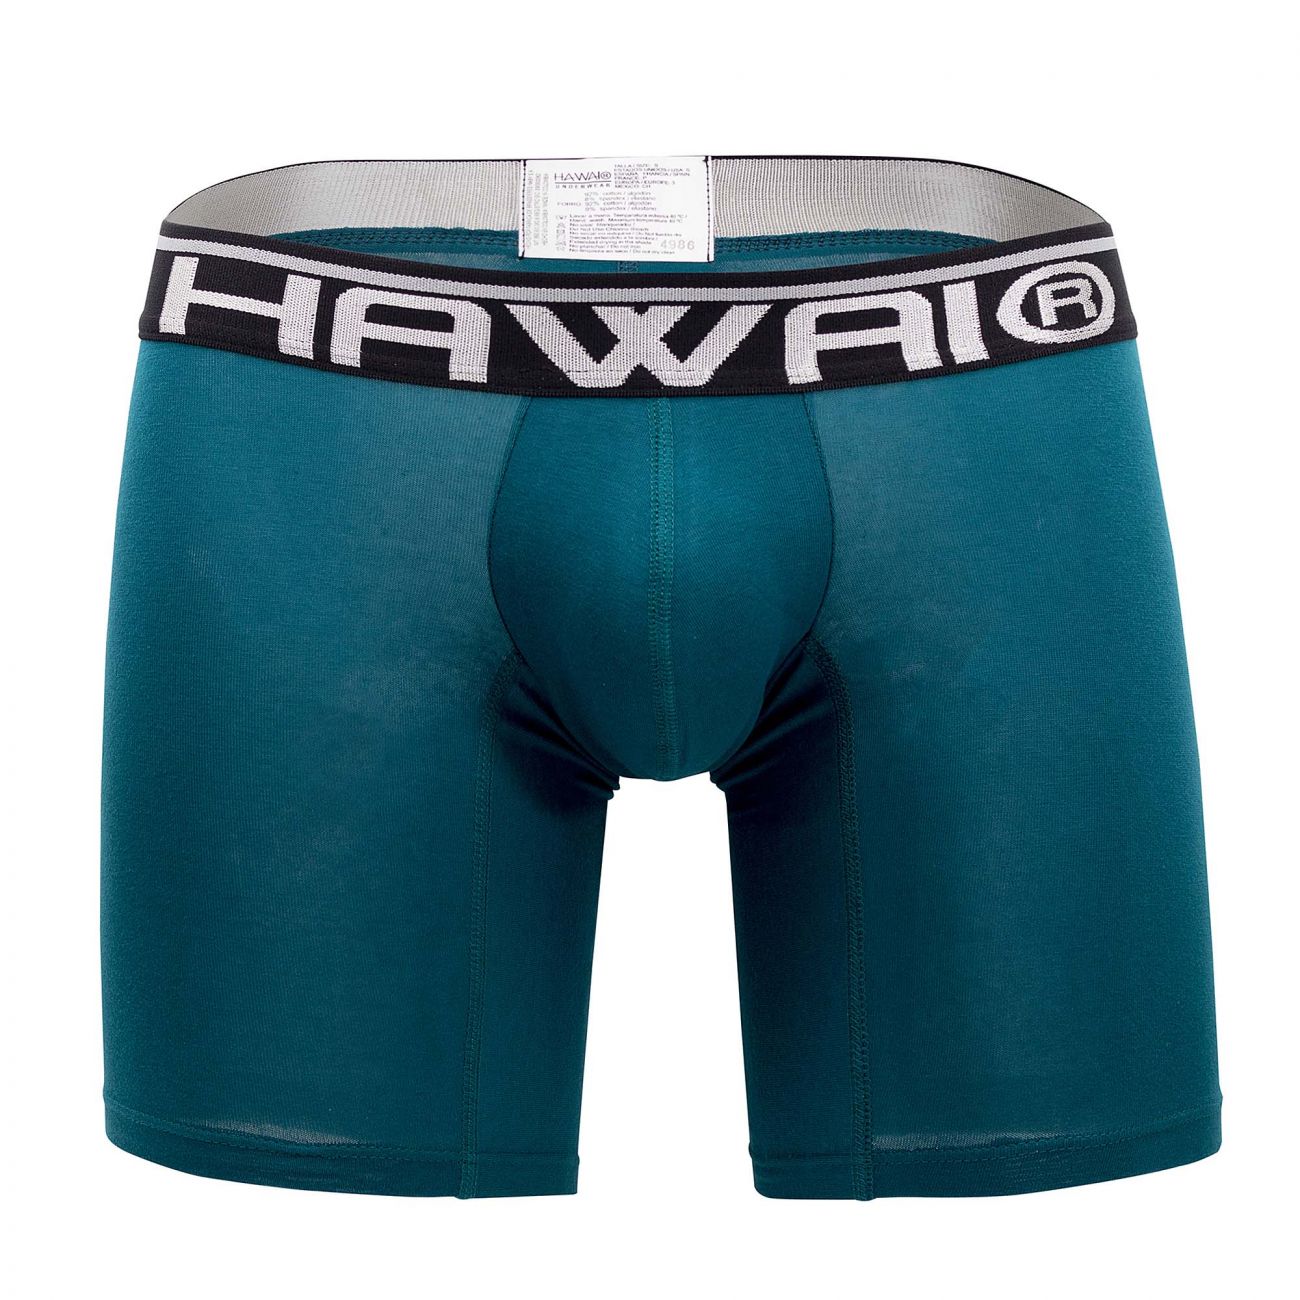 HAWAI 41903 Solid Athletic Boxer Briefs